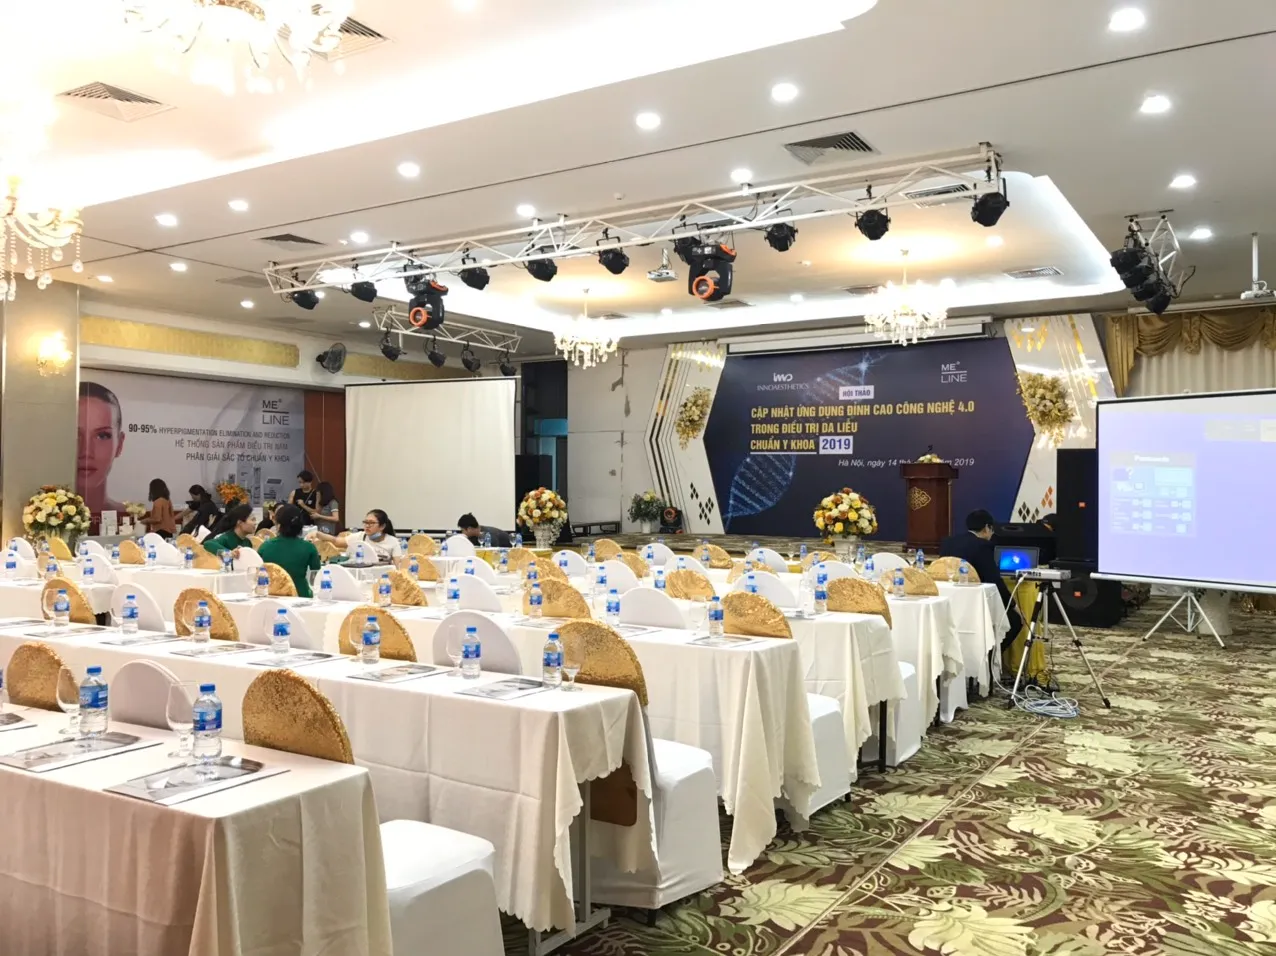  Tổ chức hội nghị tại Bình Thuận